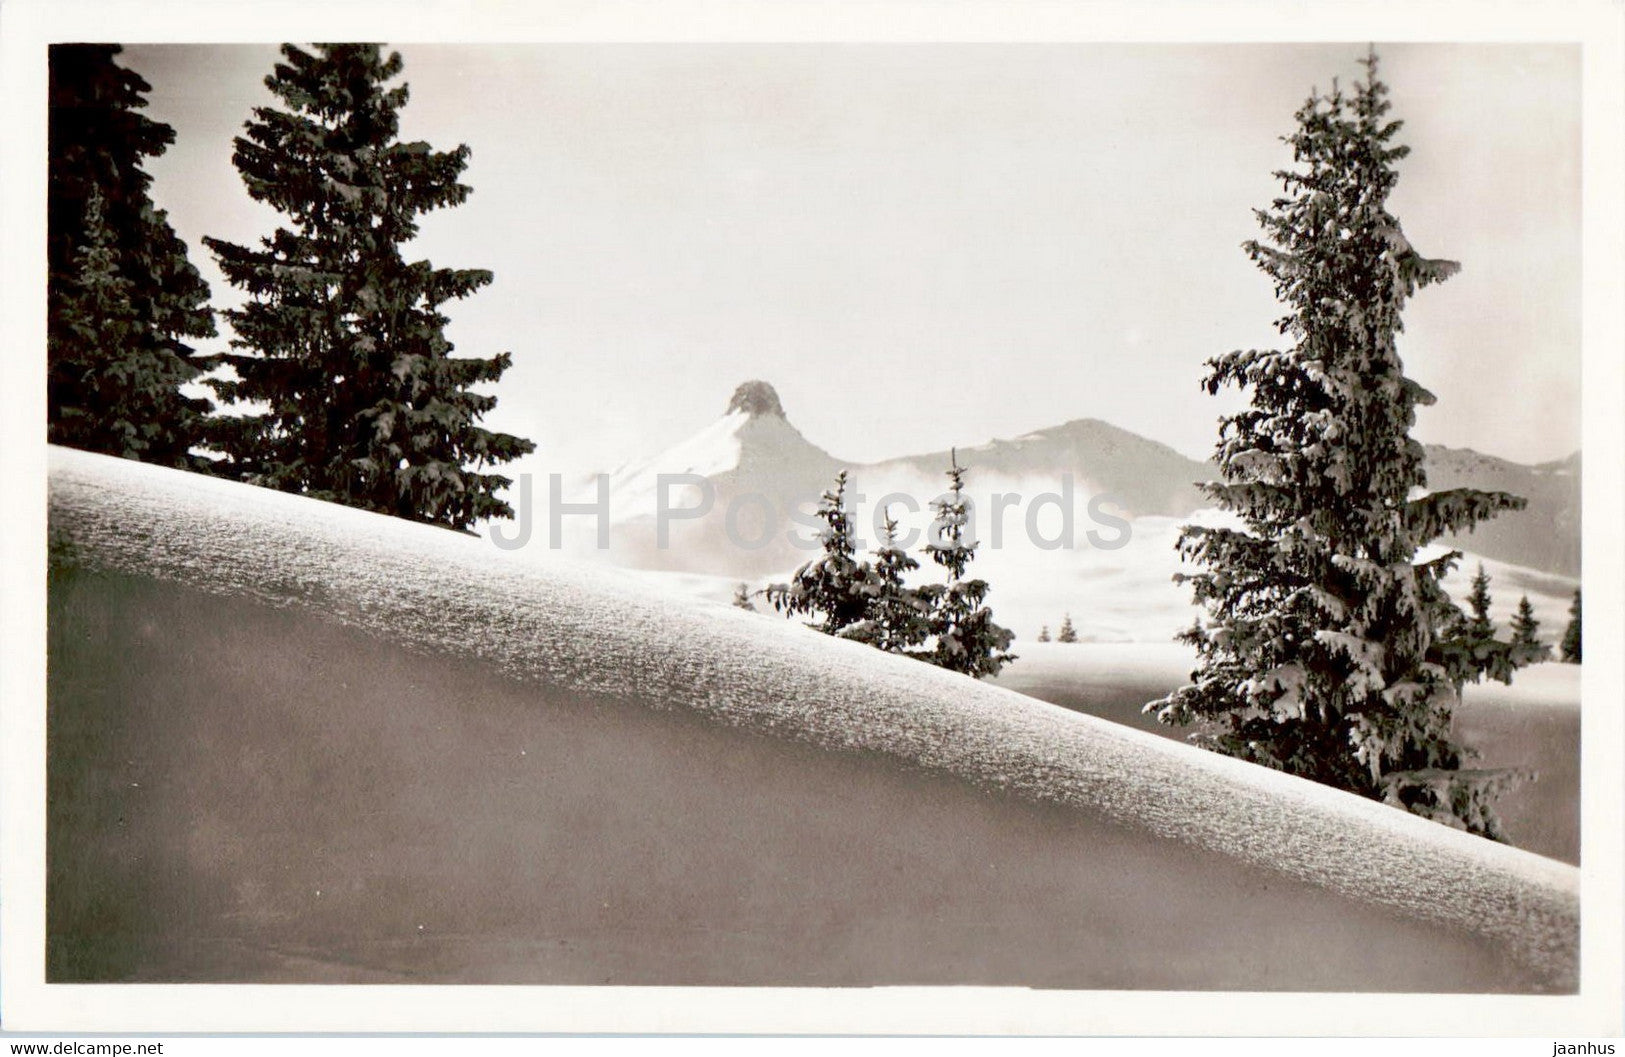 Flums - Spizmeilen 2507 m u Weissmeilen 2485 m - 1942 - old postcard - Switzerland - used - JH Postcards